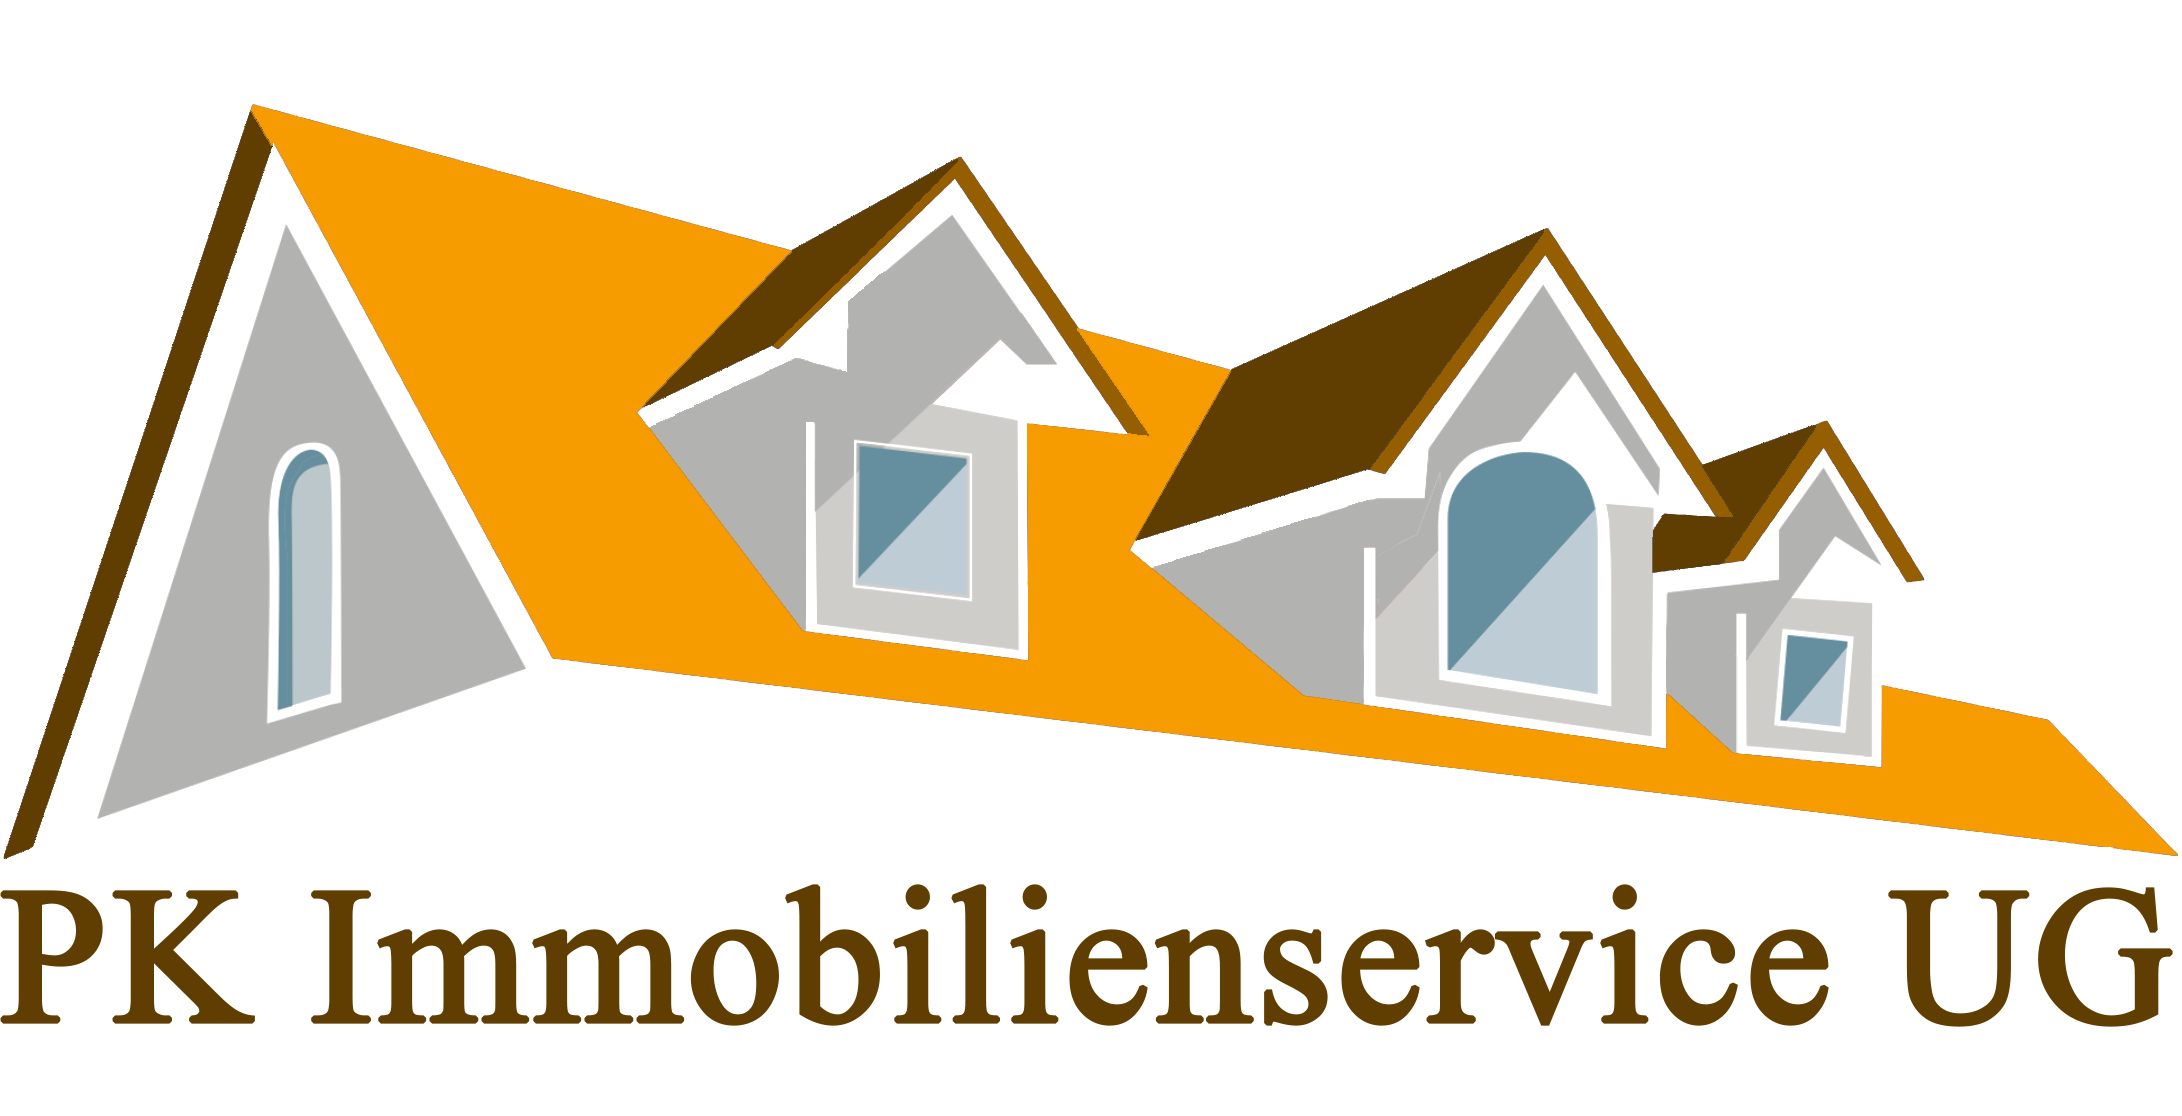 Logo PK Immobilienservice UG gelbes Dach mit Unternehmensname